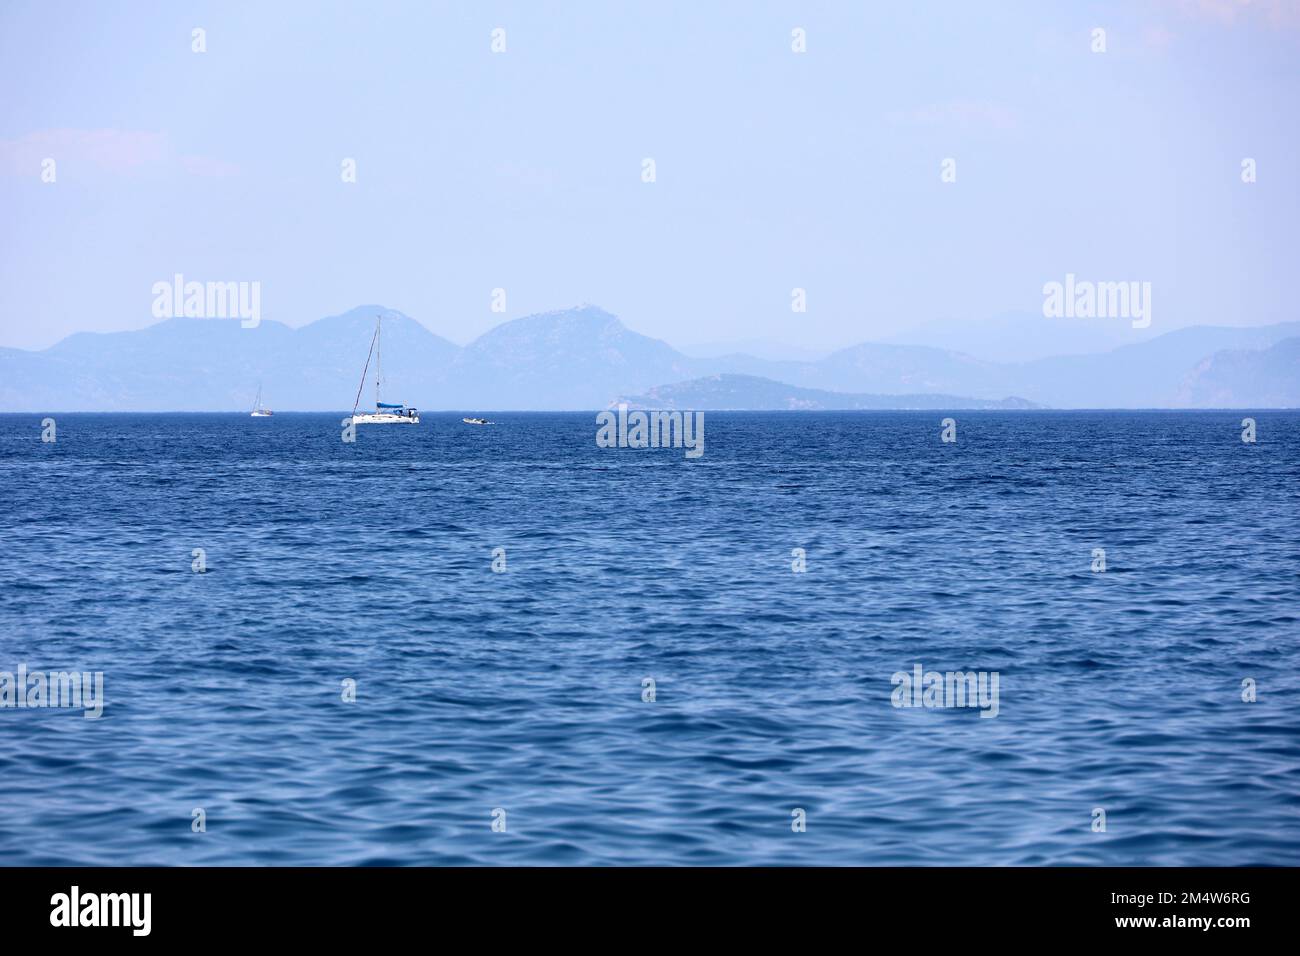 Vue pittoresque sur la mer bleue avec yachts à voile et îles de montagne à l'horizon dans la brume. Surface d'eau calme, toile de fond pour les voyages et les vacances Banque D'Images